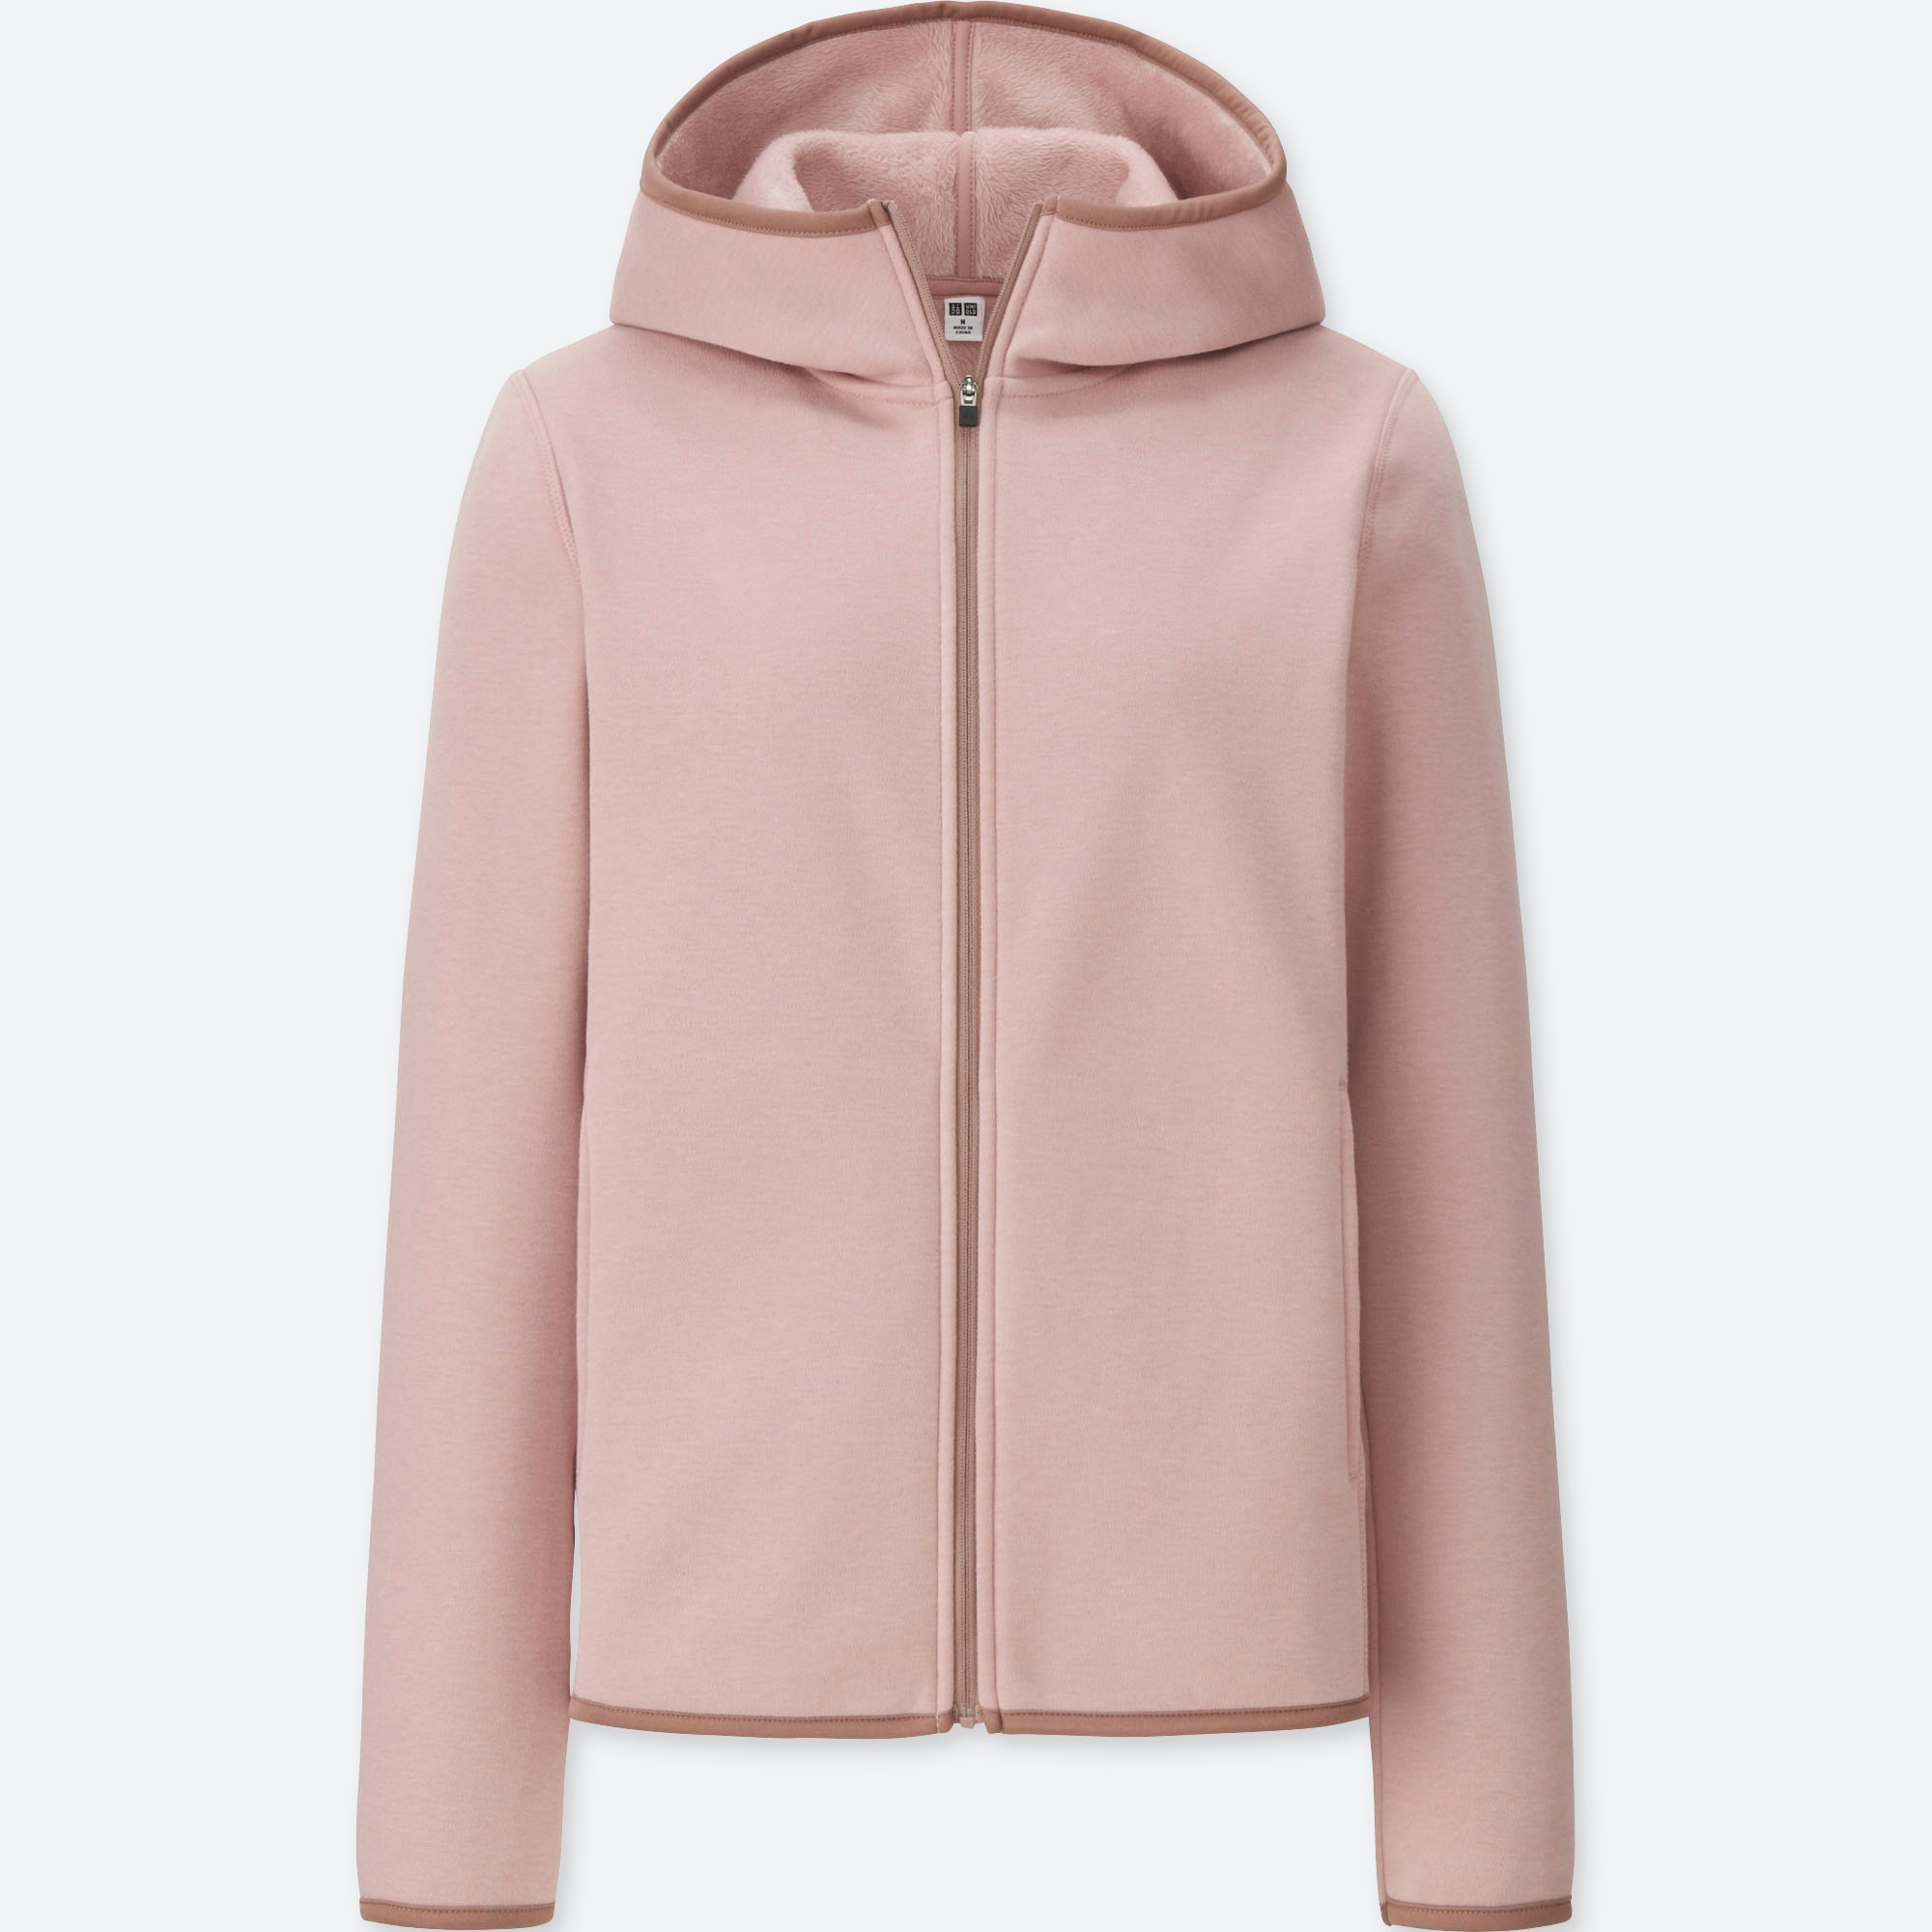 uniqlo women's zip hoodie